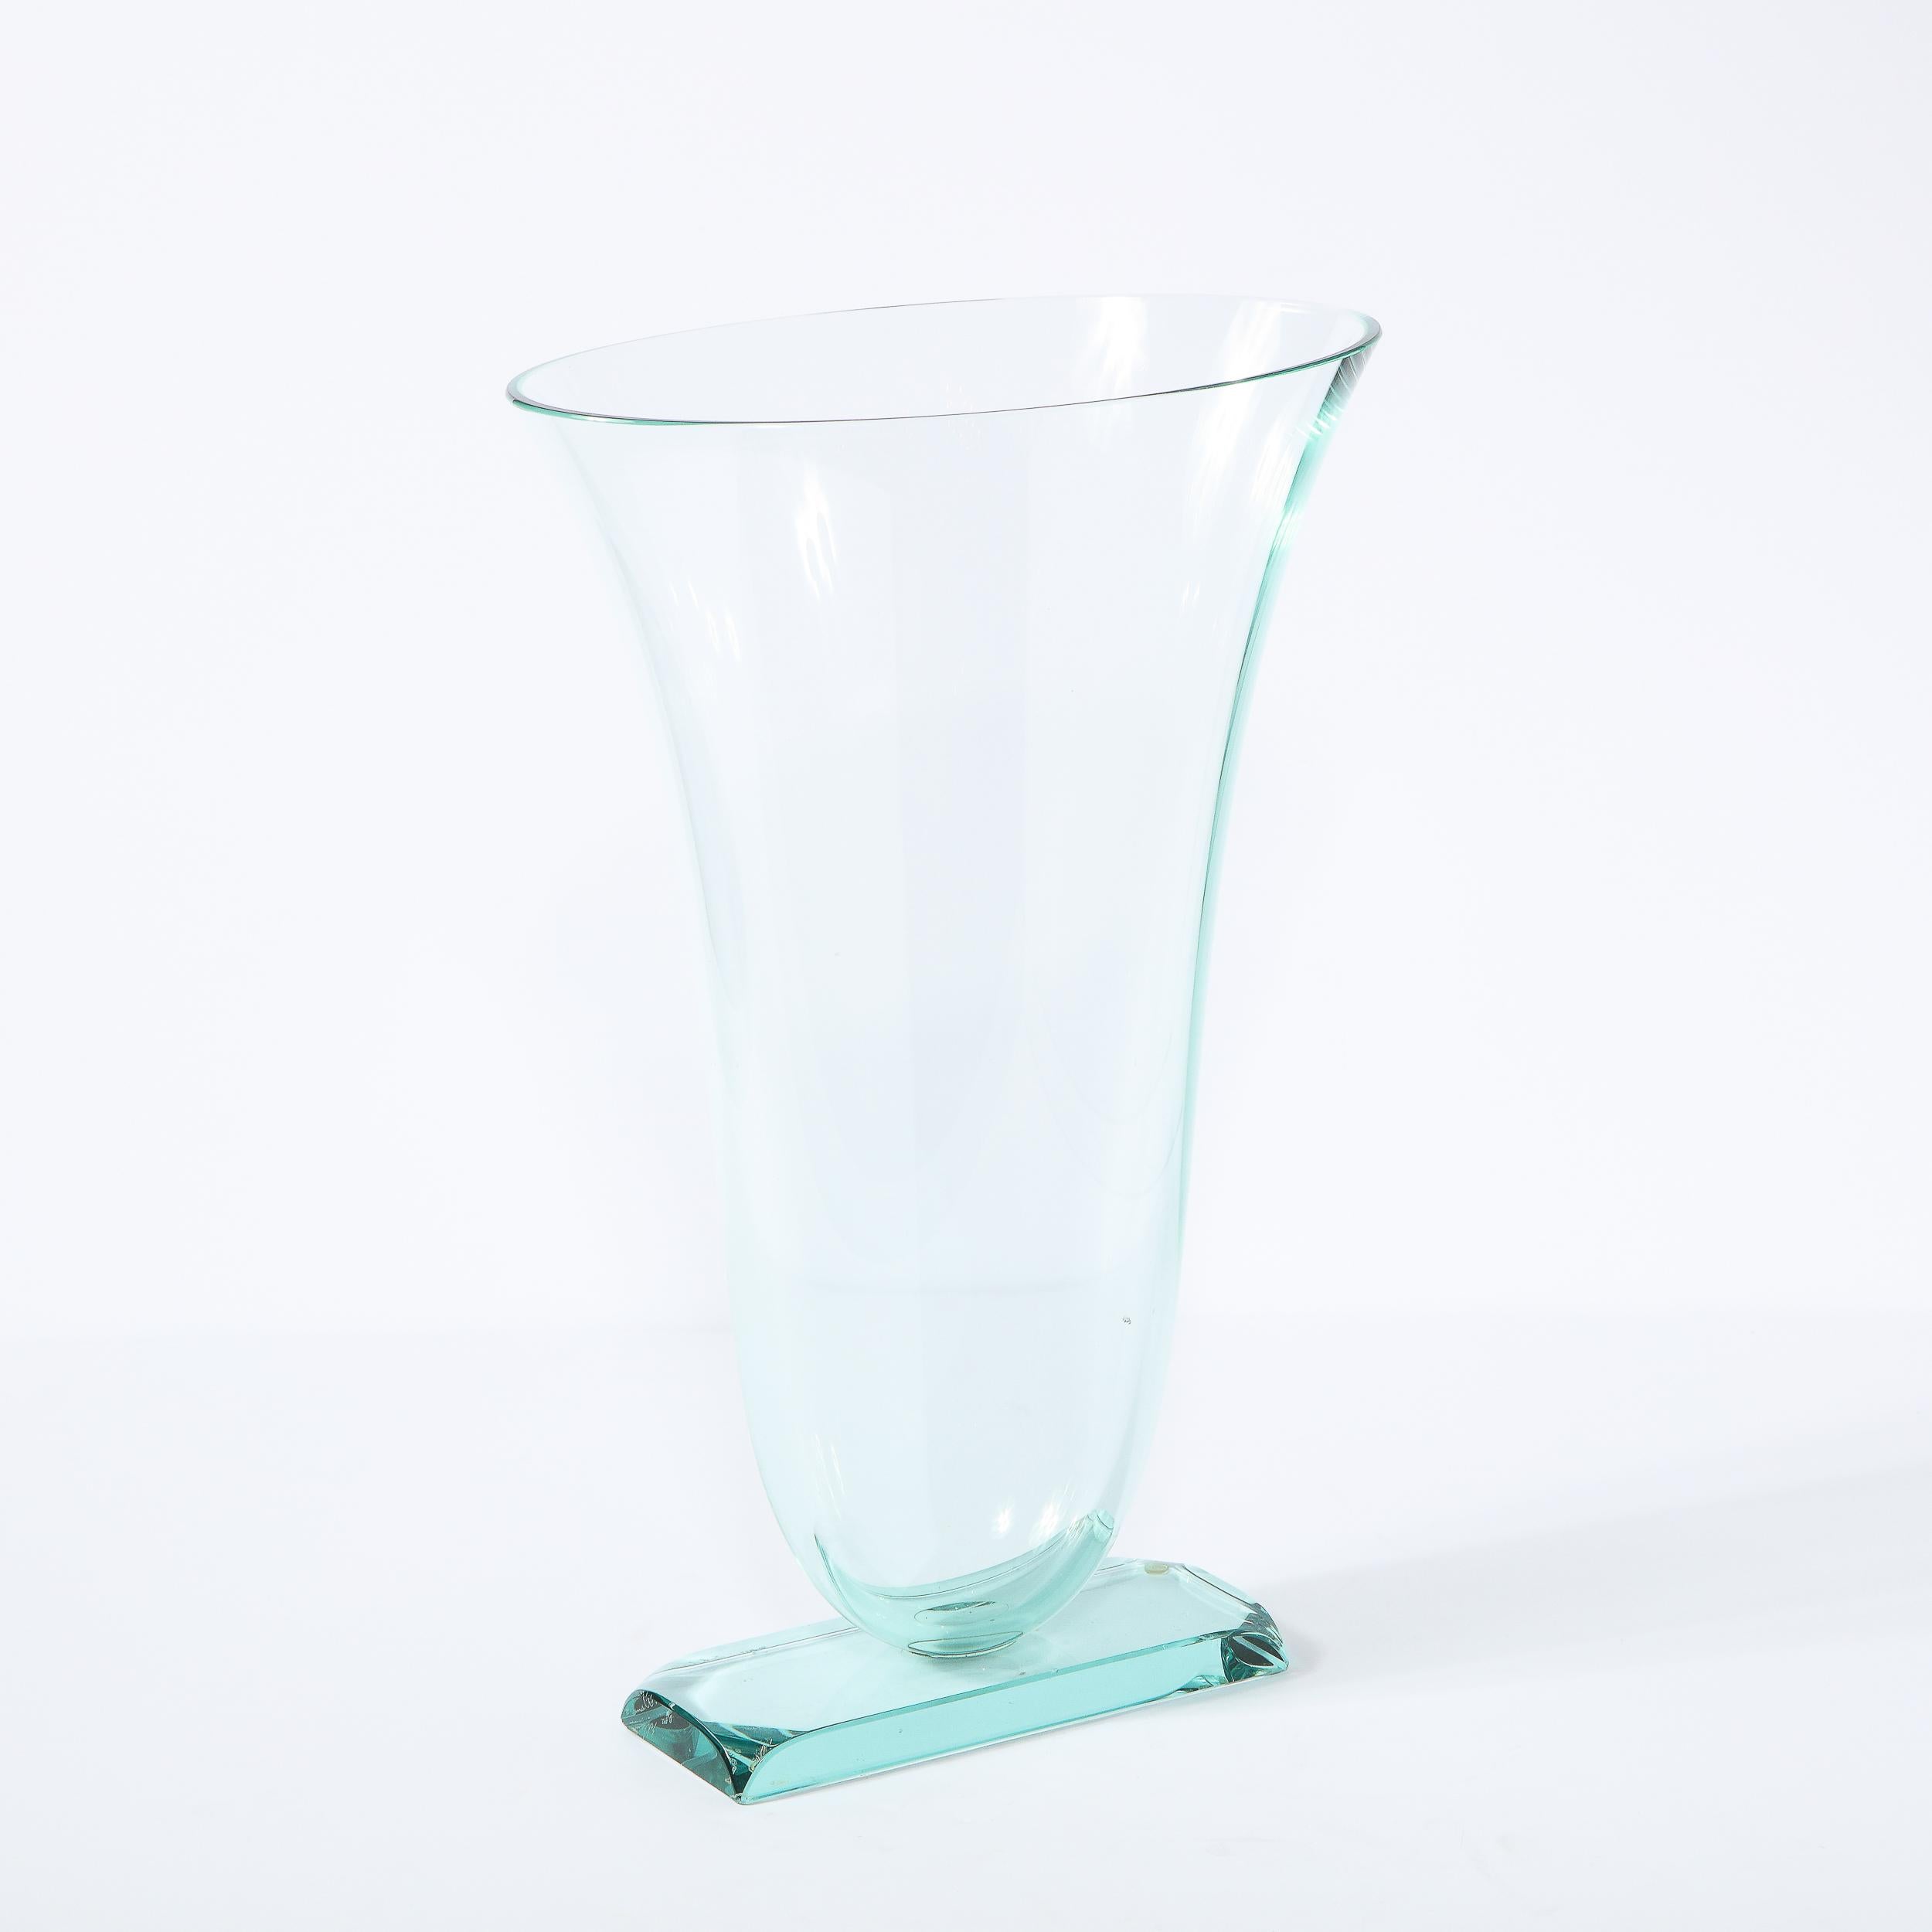 Glass Modernist Sculptural Translucent Acqua Vase Signed by Schlanser Studio